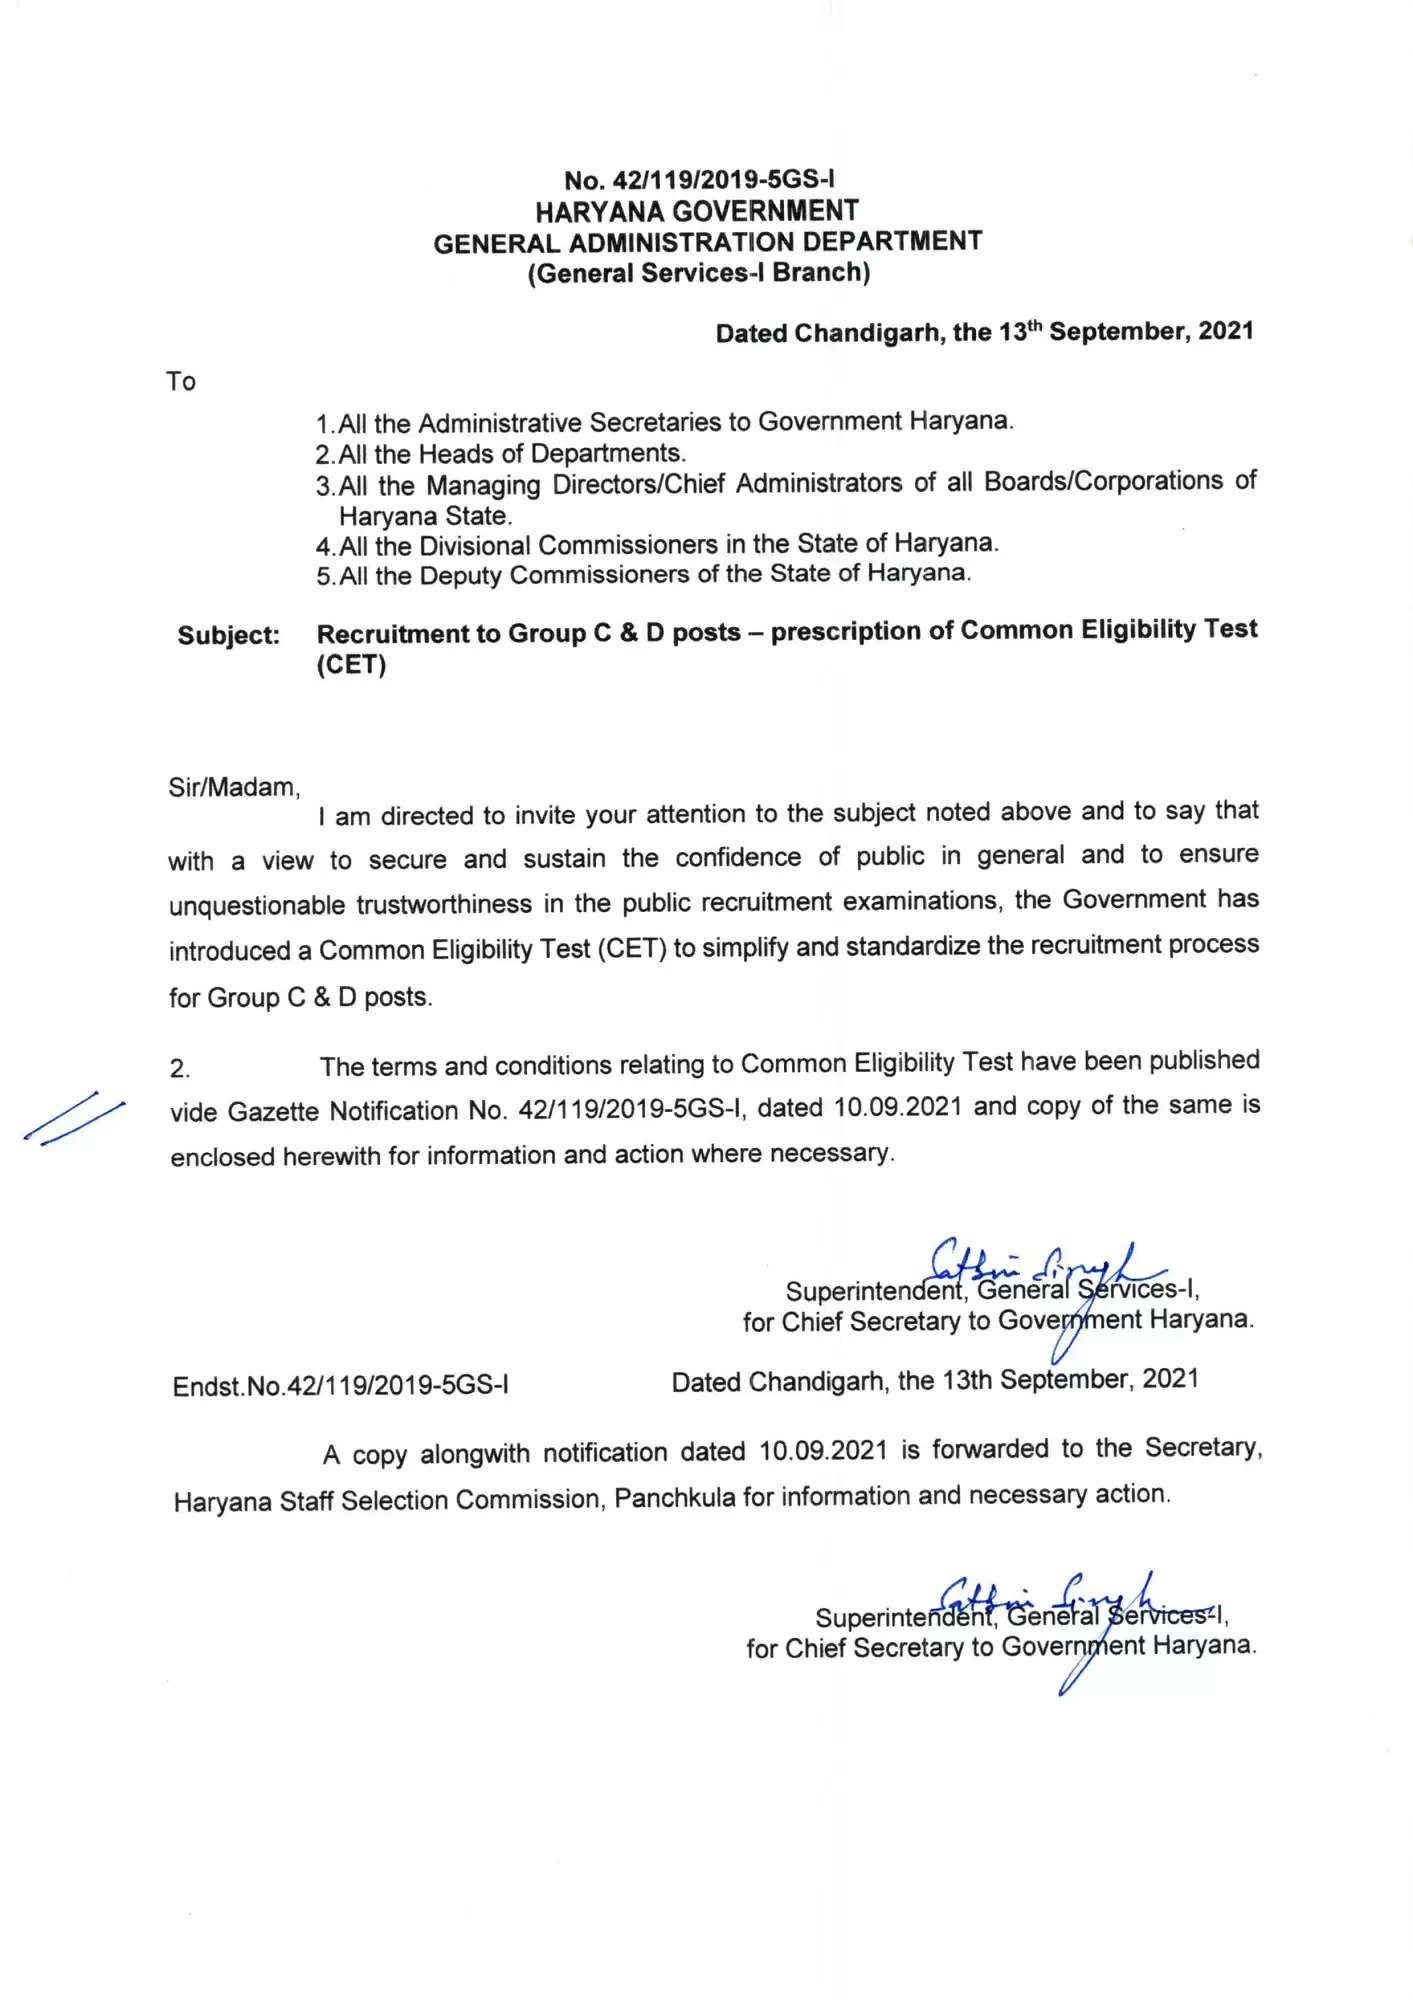 हरियाणा सरकार ने ग्रुप-सी व डी की सीईटी परीक्षा के लिए जारी किया नोटिस, यहां देखें